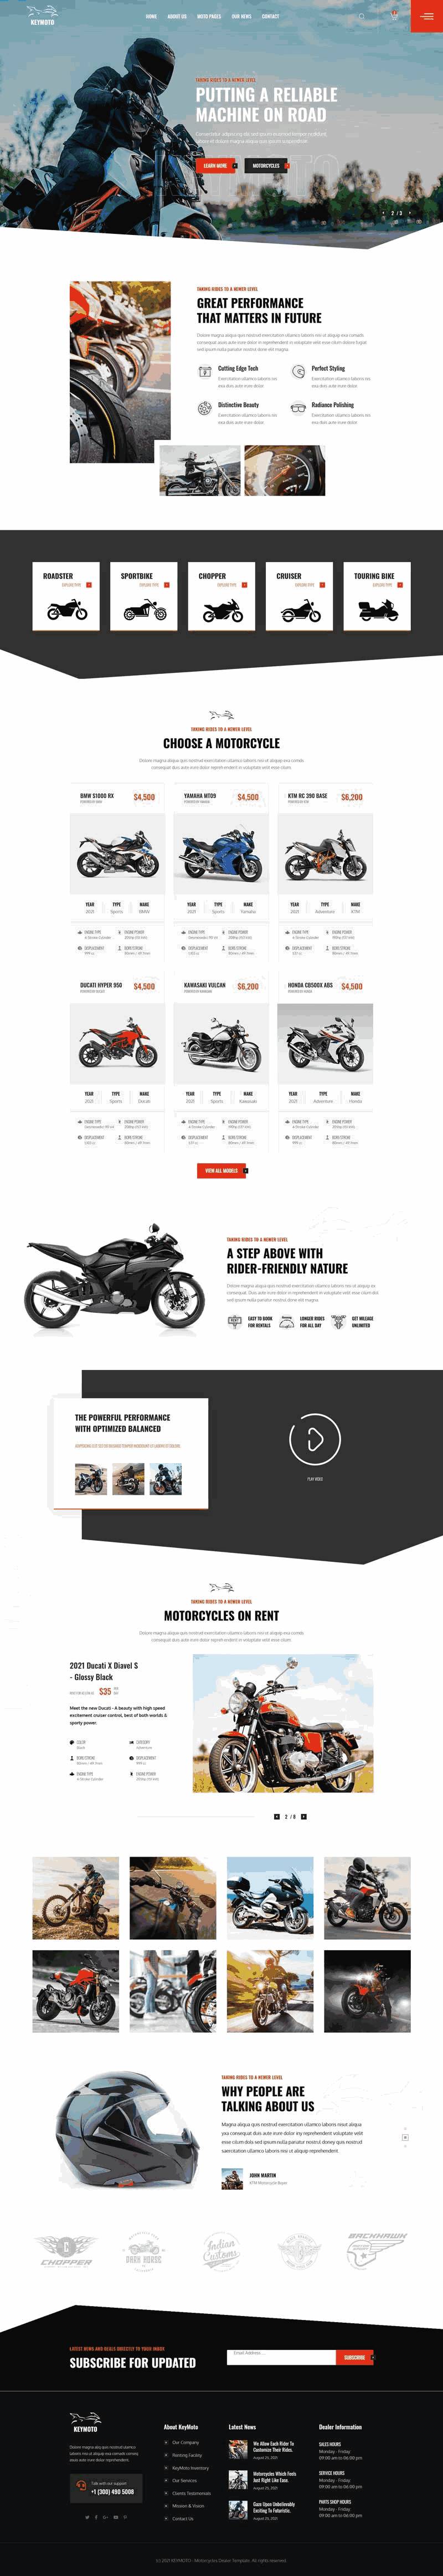 高端品牌摩托车销售公司网站带手机端WordPress模板演示图